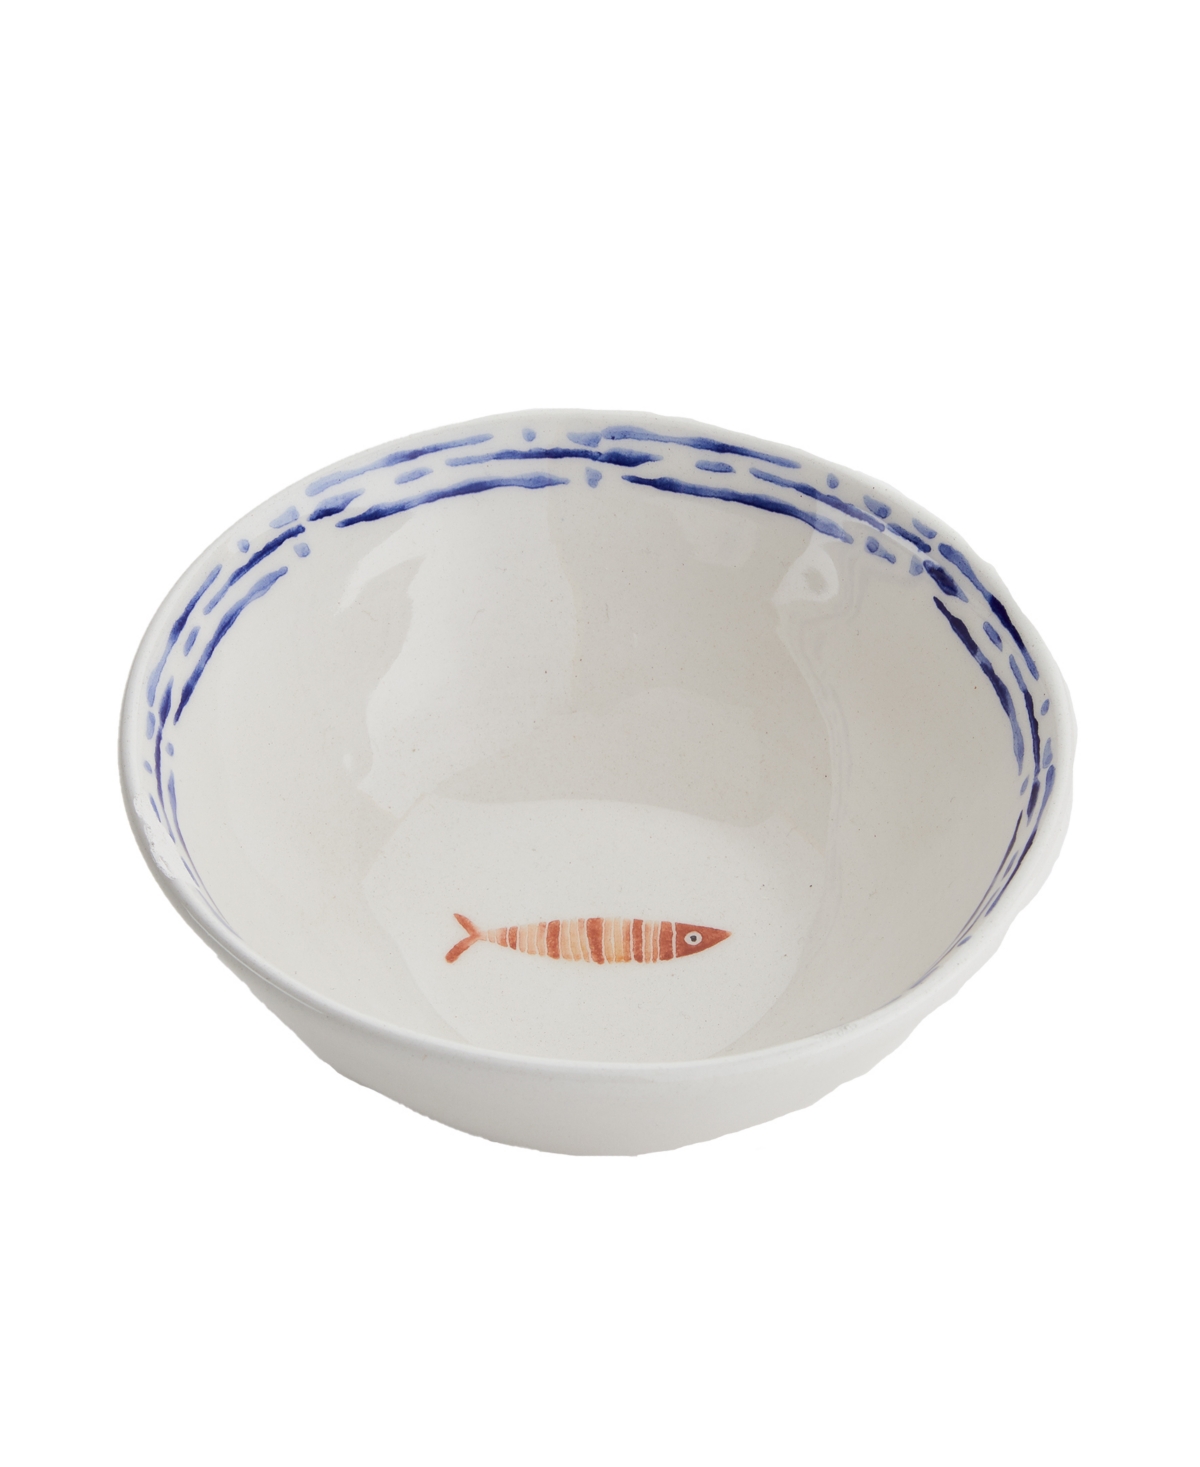 Sardinia Small Bowls, Set of 4 - Blue